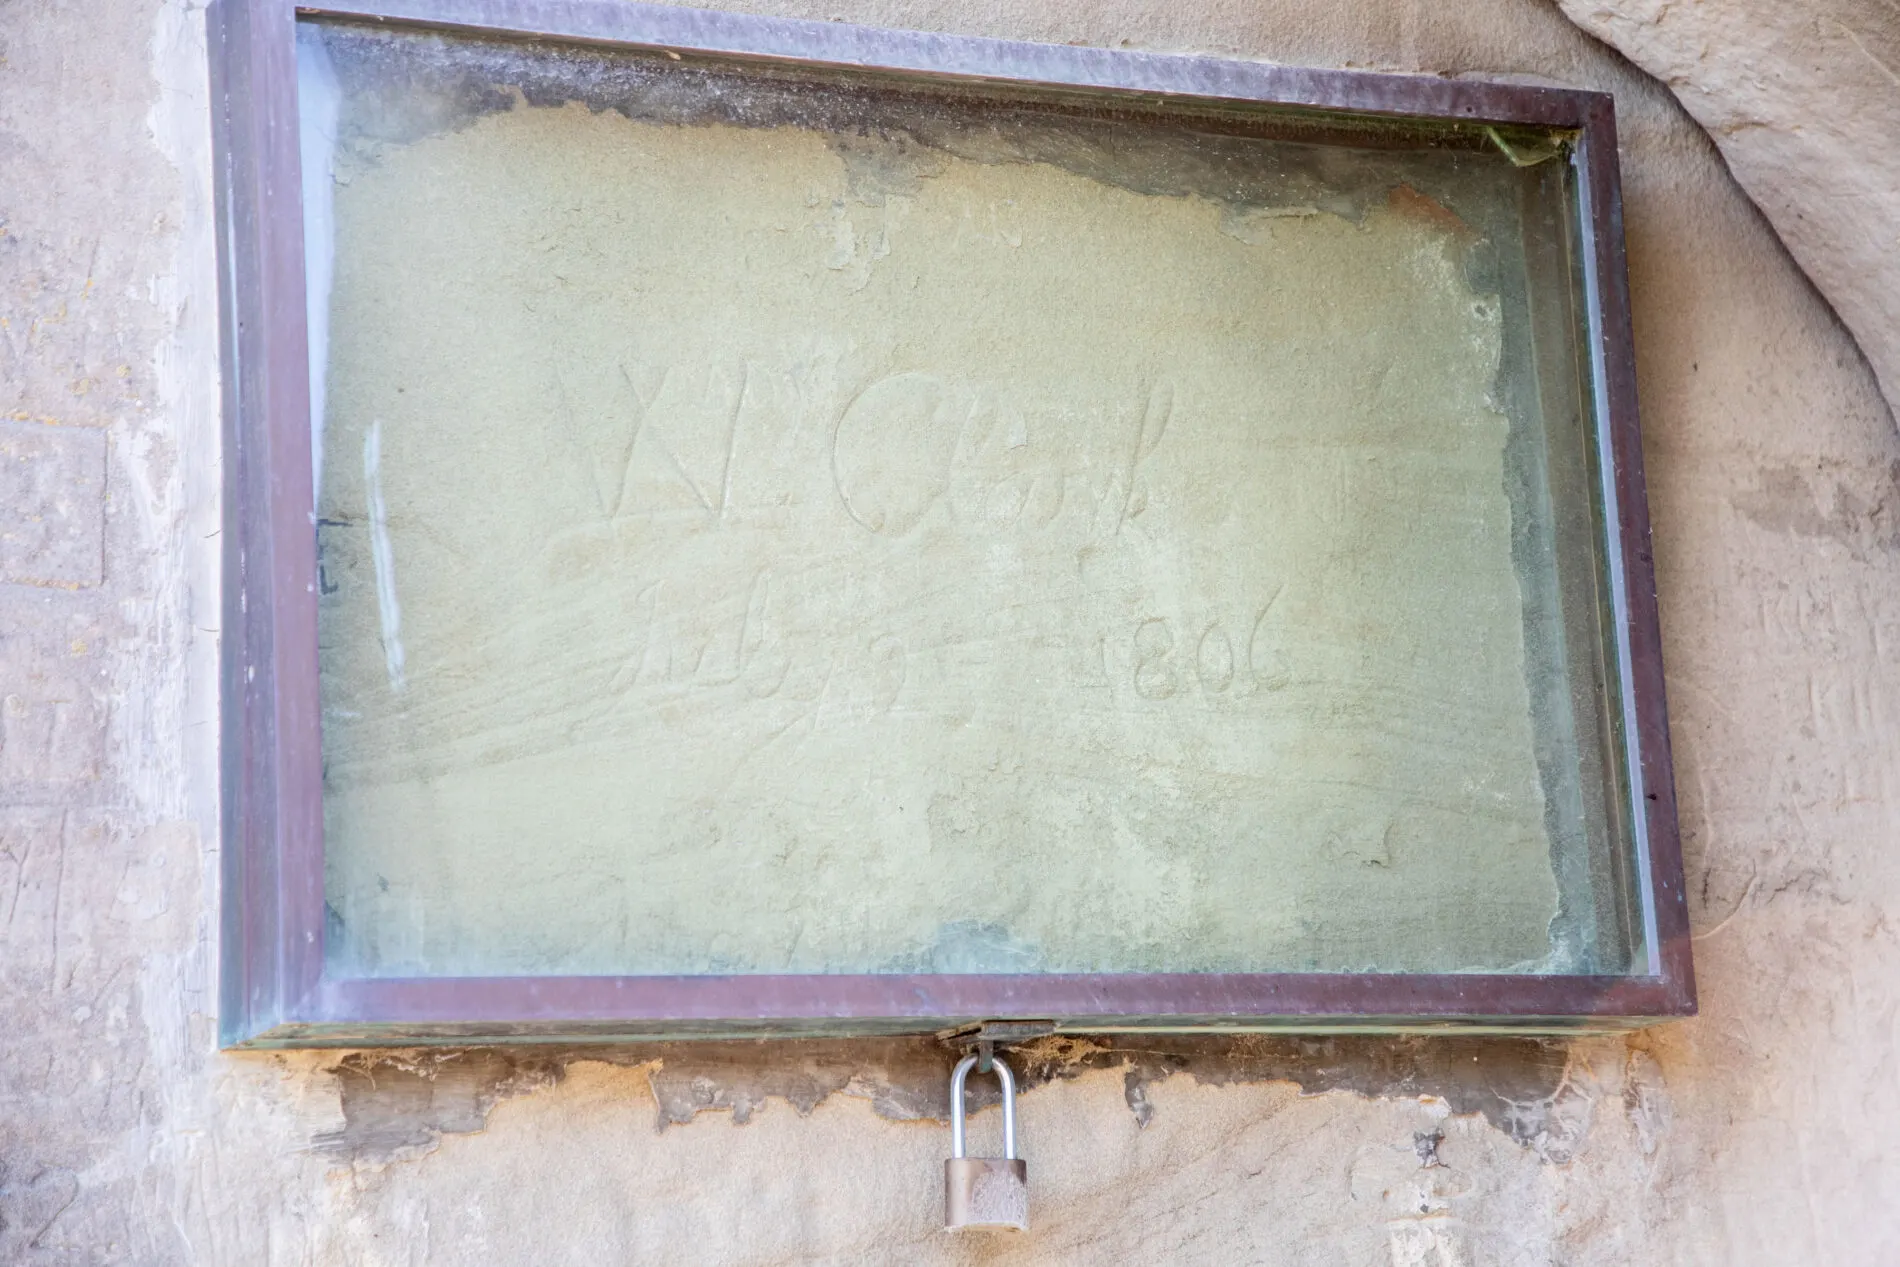 The carving of William Clark's signature.